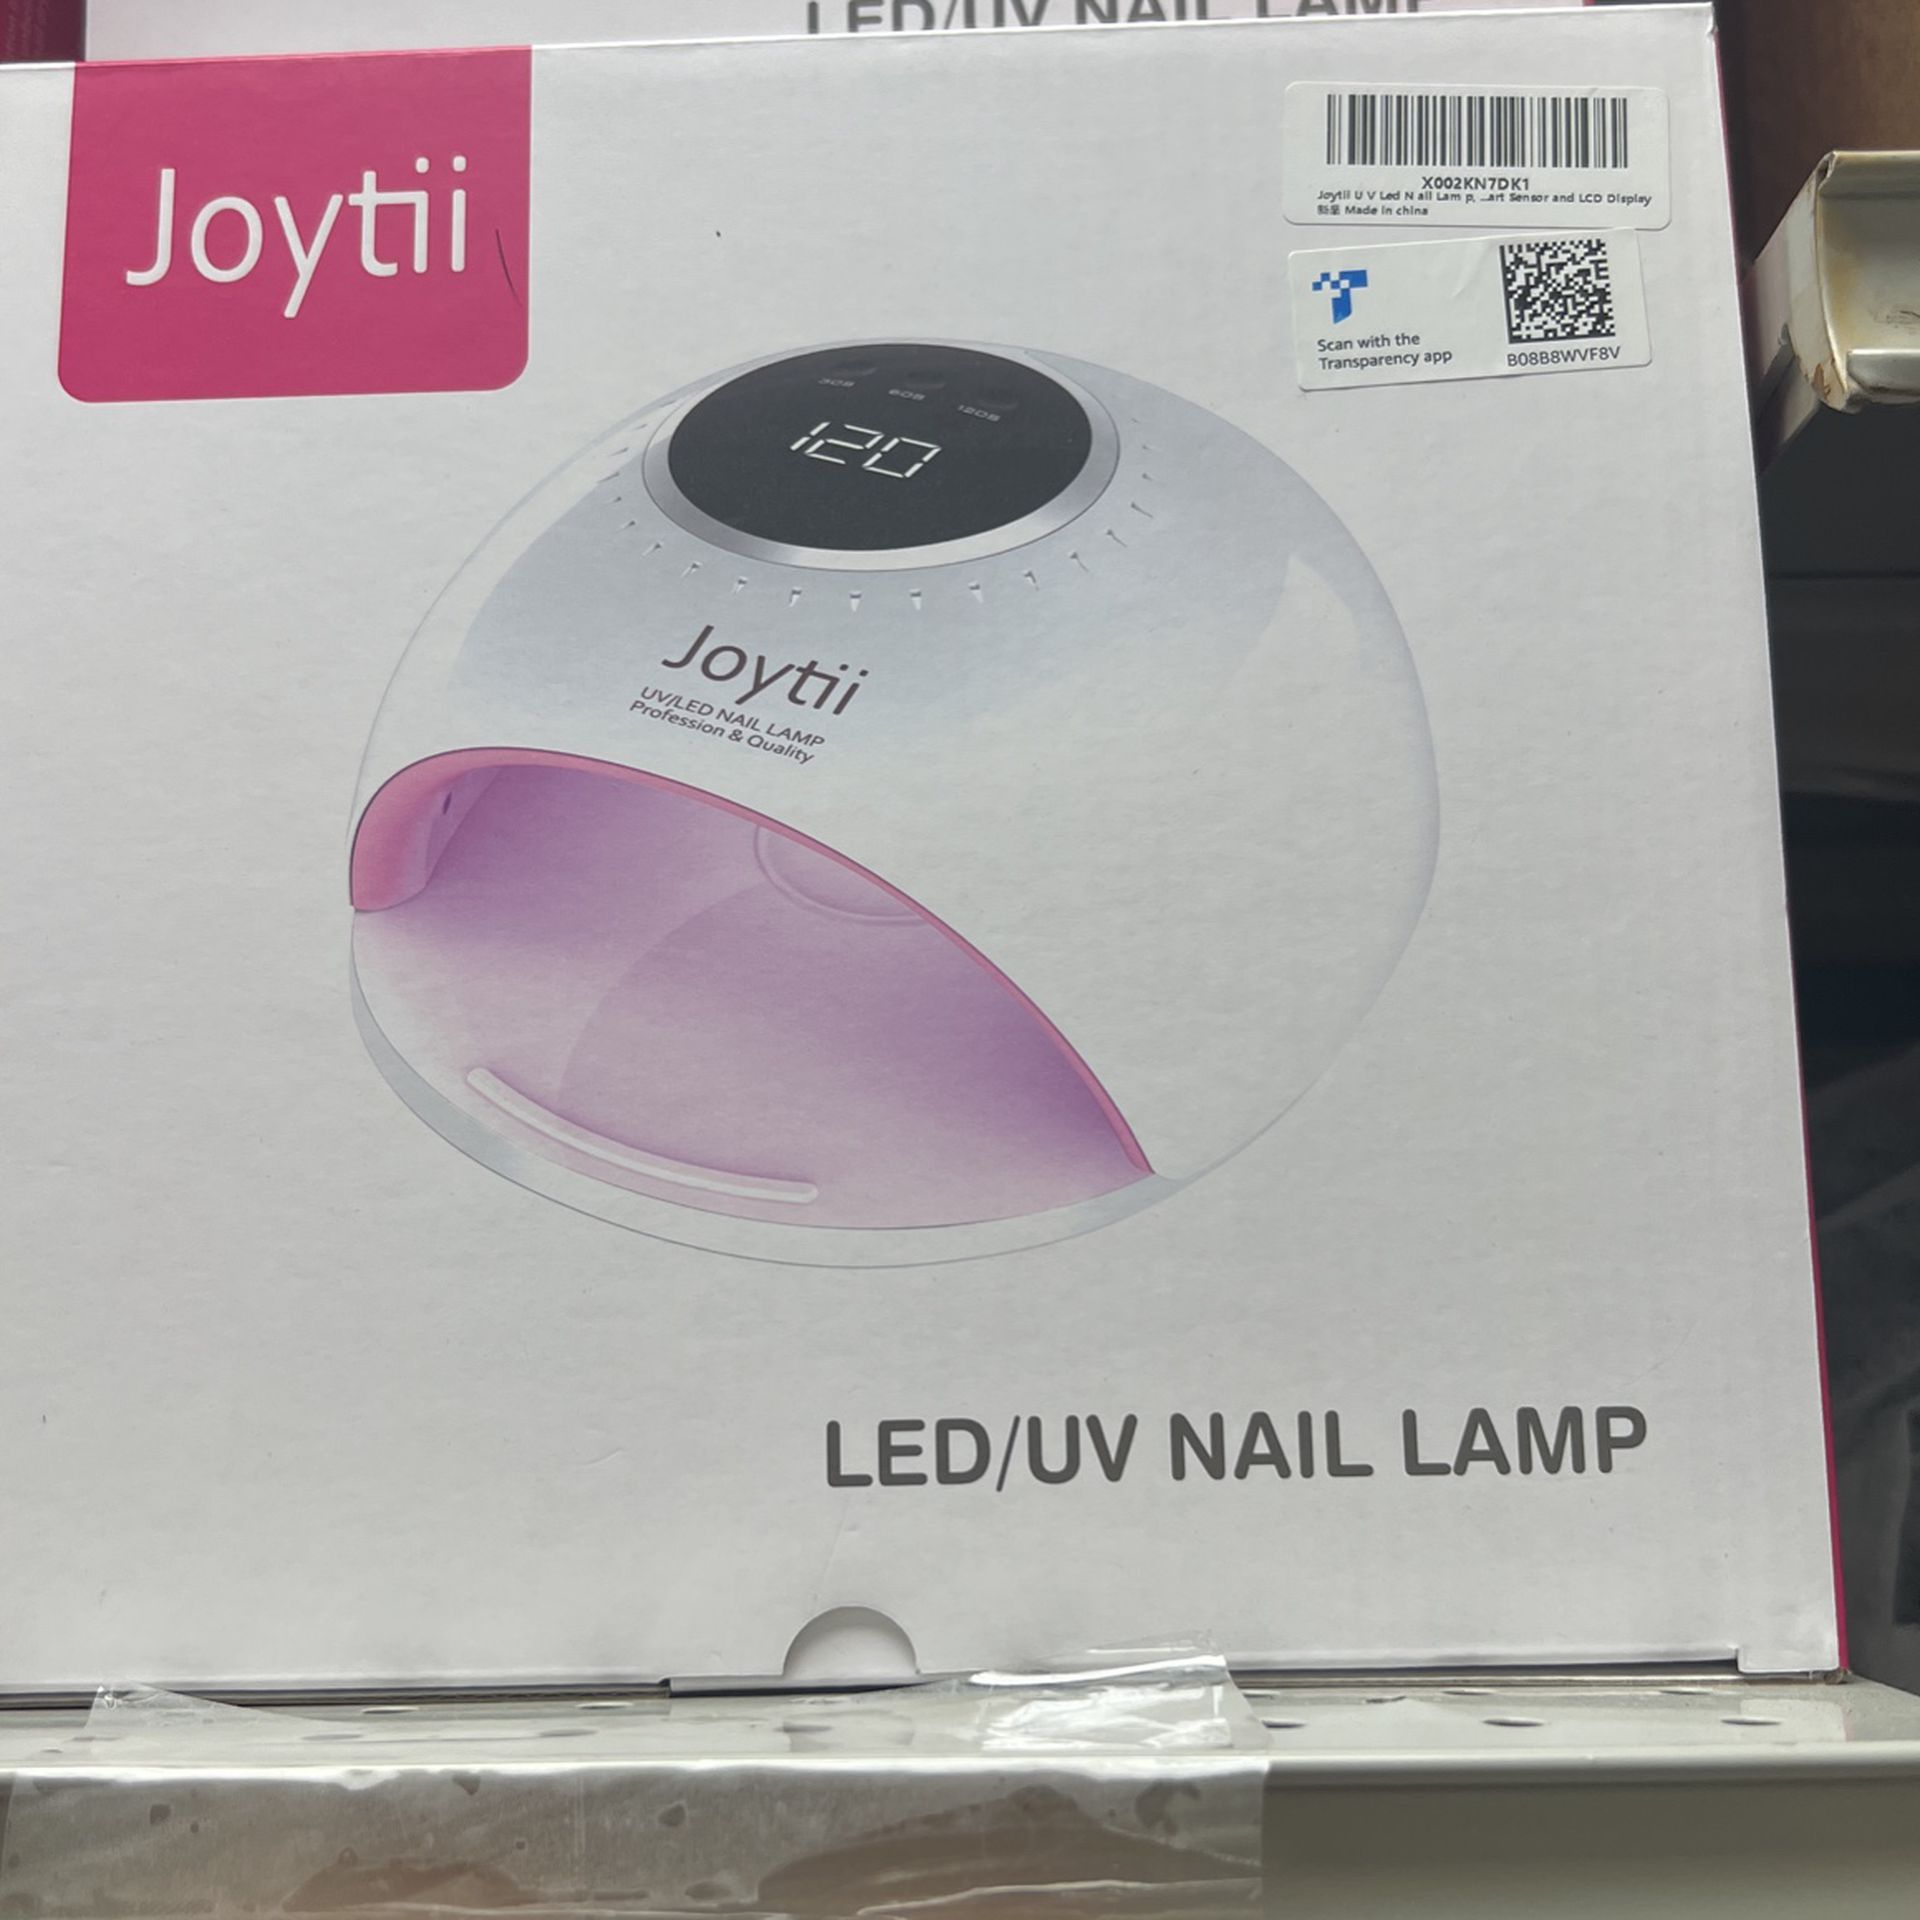 Led I’ve Nail Lamp